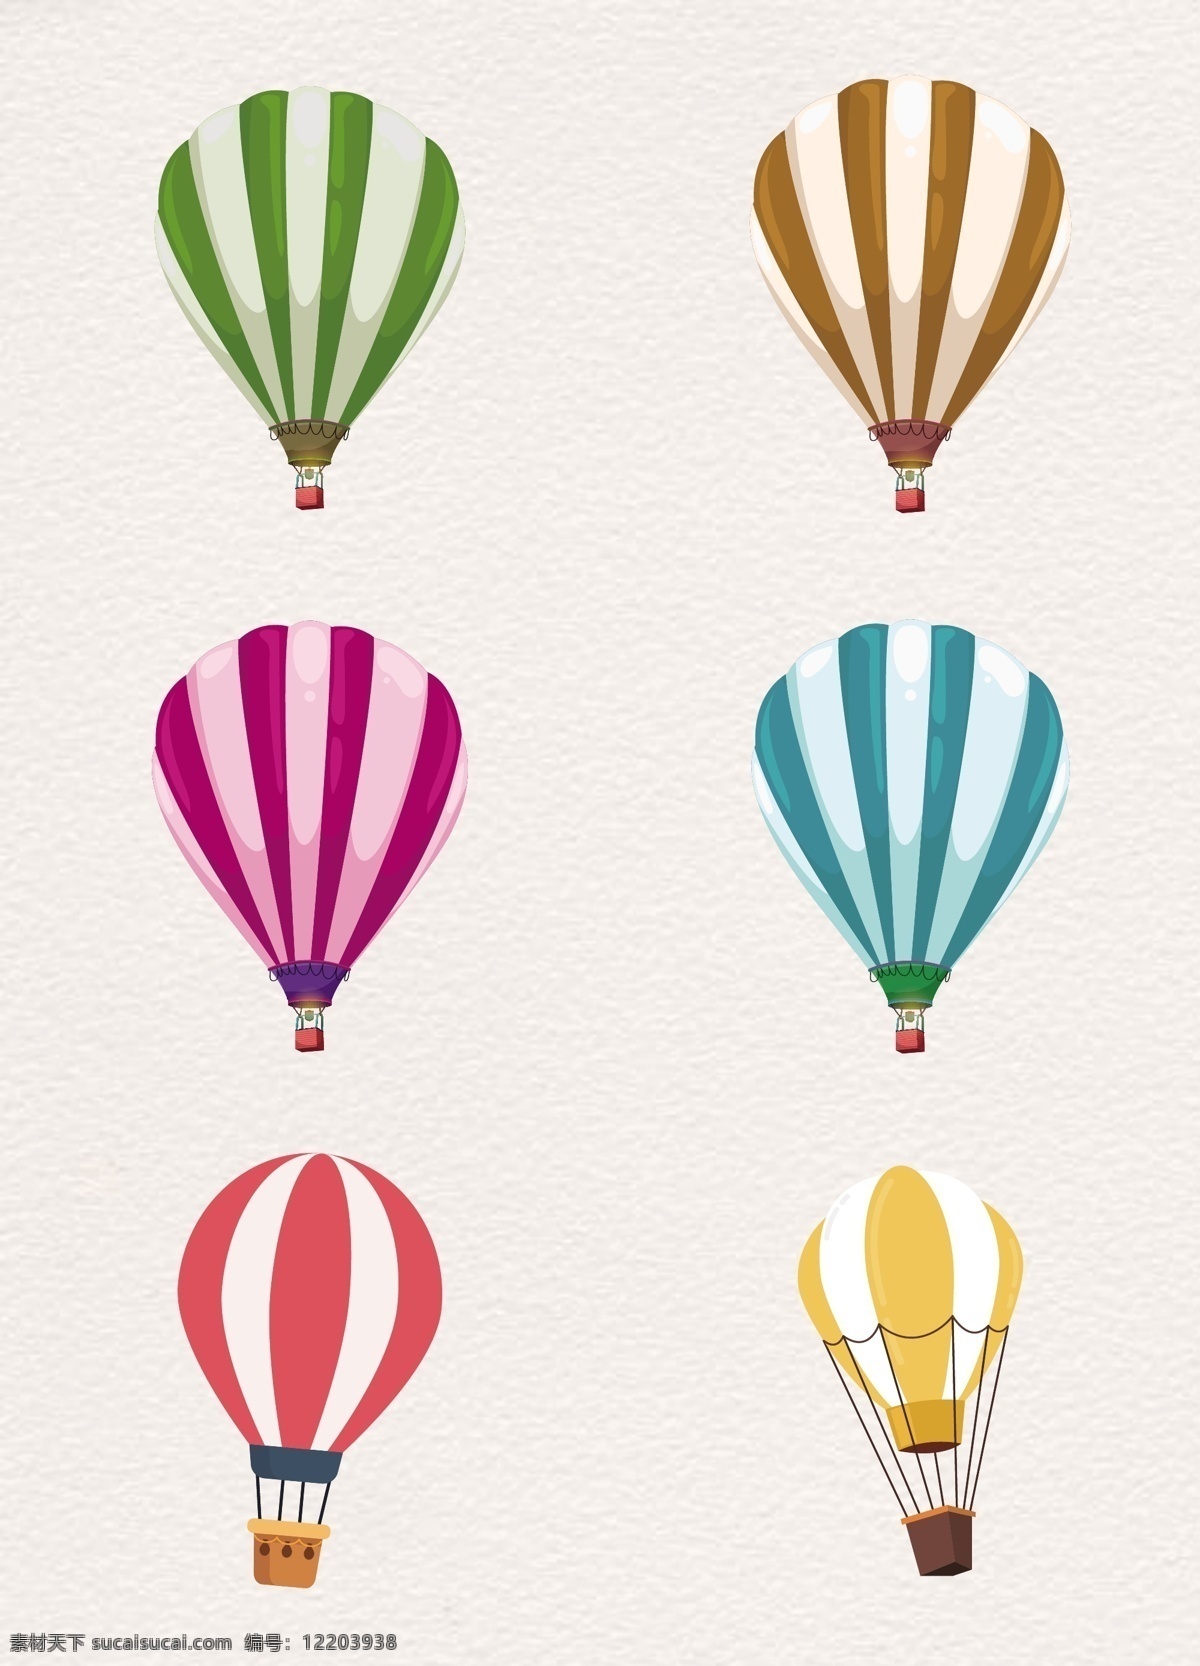 色 花纹 旅行 暖色系列 矢量图 条格状 装饰图 卡通 插图 创意卡通 飞行 卡通气球 浅色 热气球矢量 形状 圆弧 运动 图案 图标 生活百科 休闲娱乐